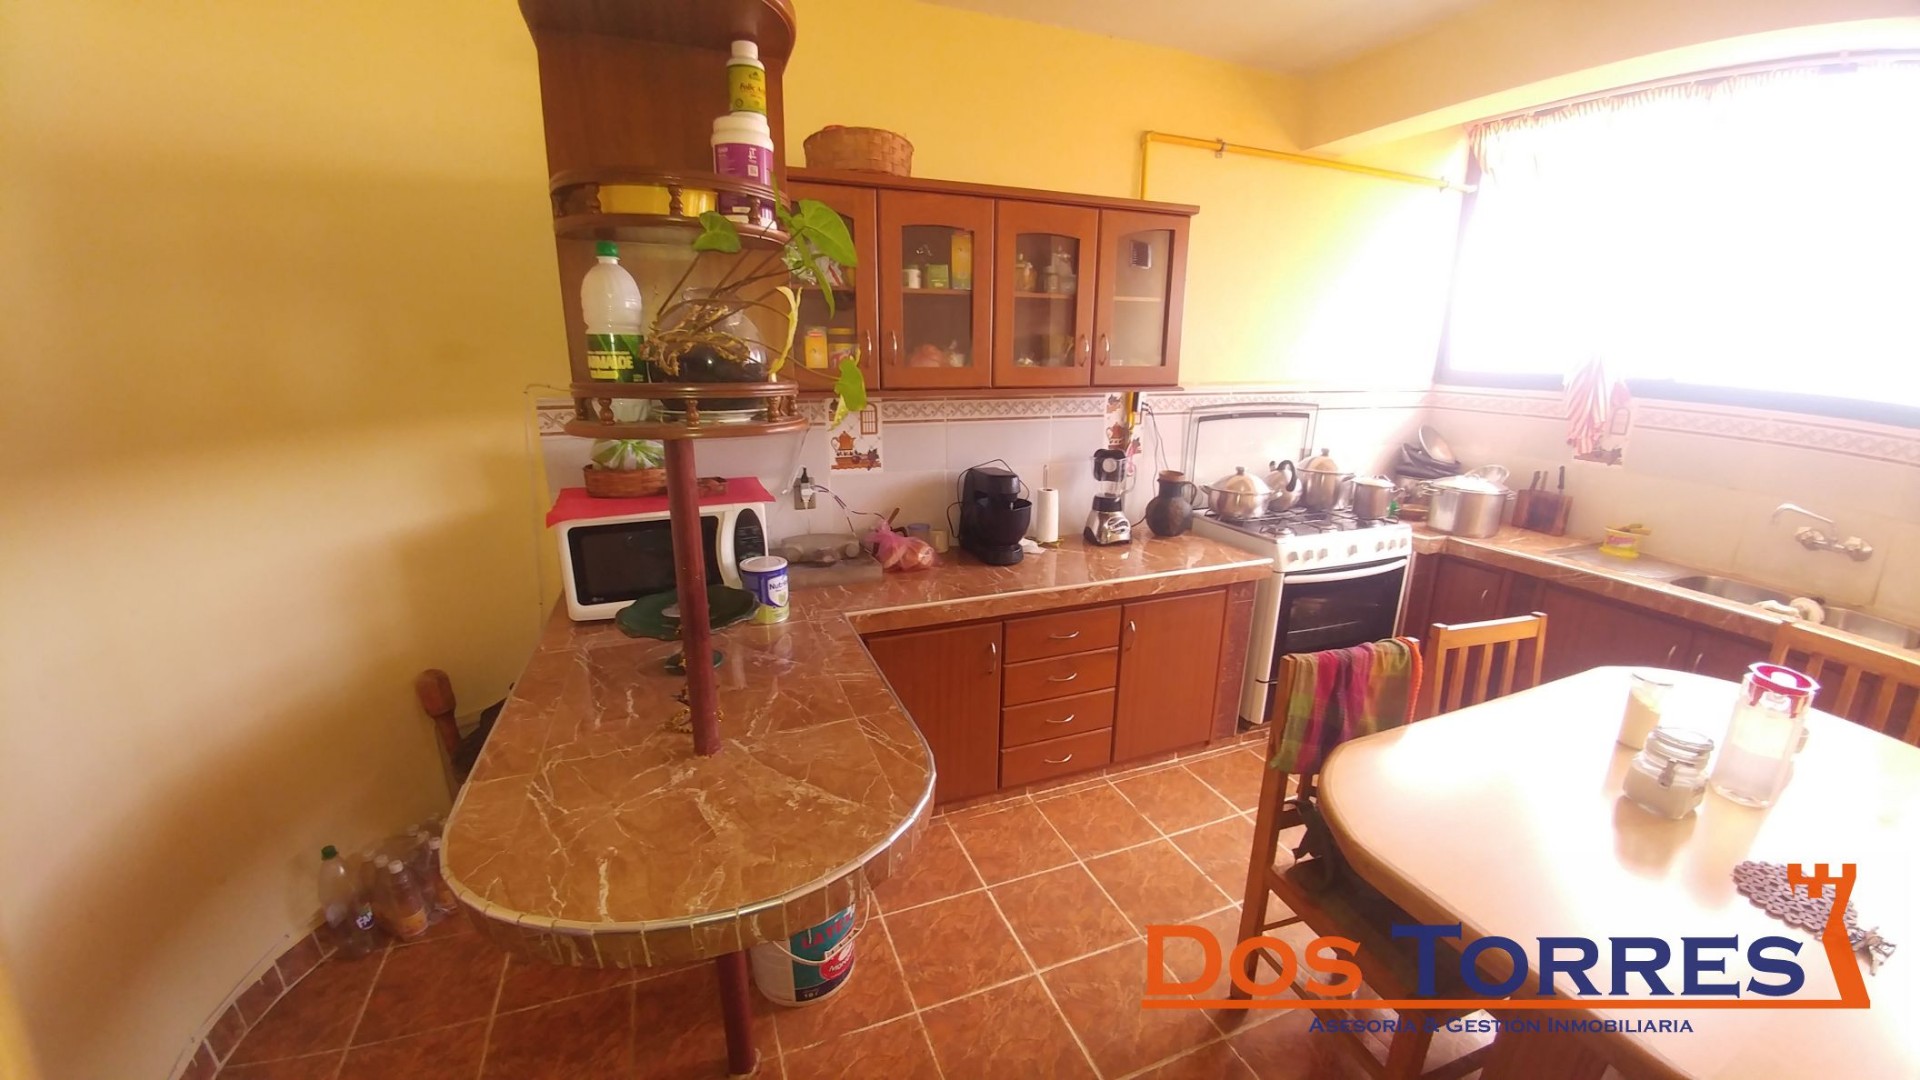 Casa en Venta137.000$us Chillimarca casa en venta con 5 Dormitorios - Ref. 910 Foto 3